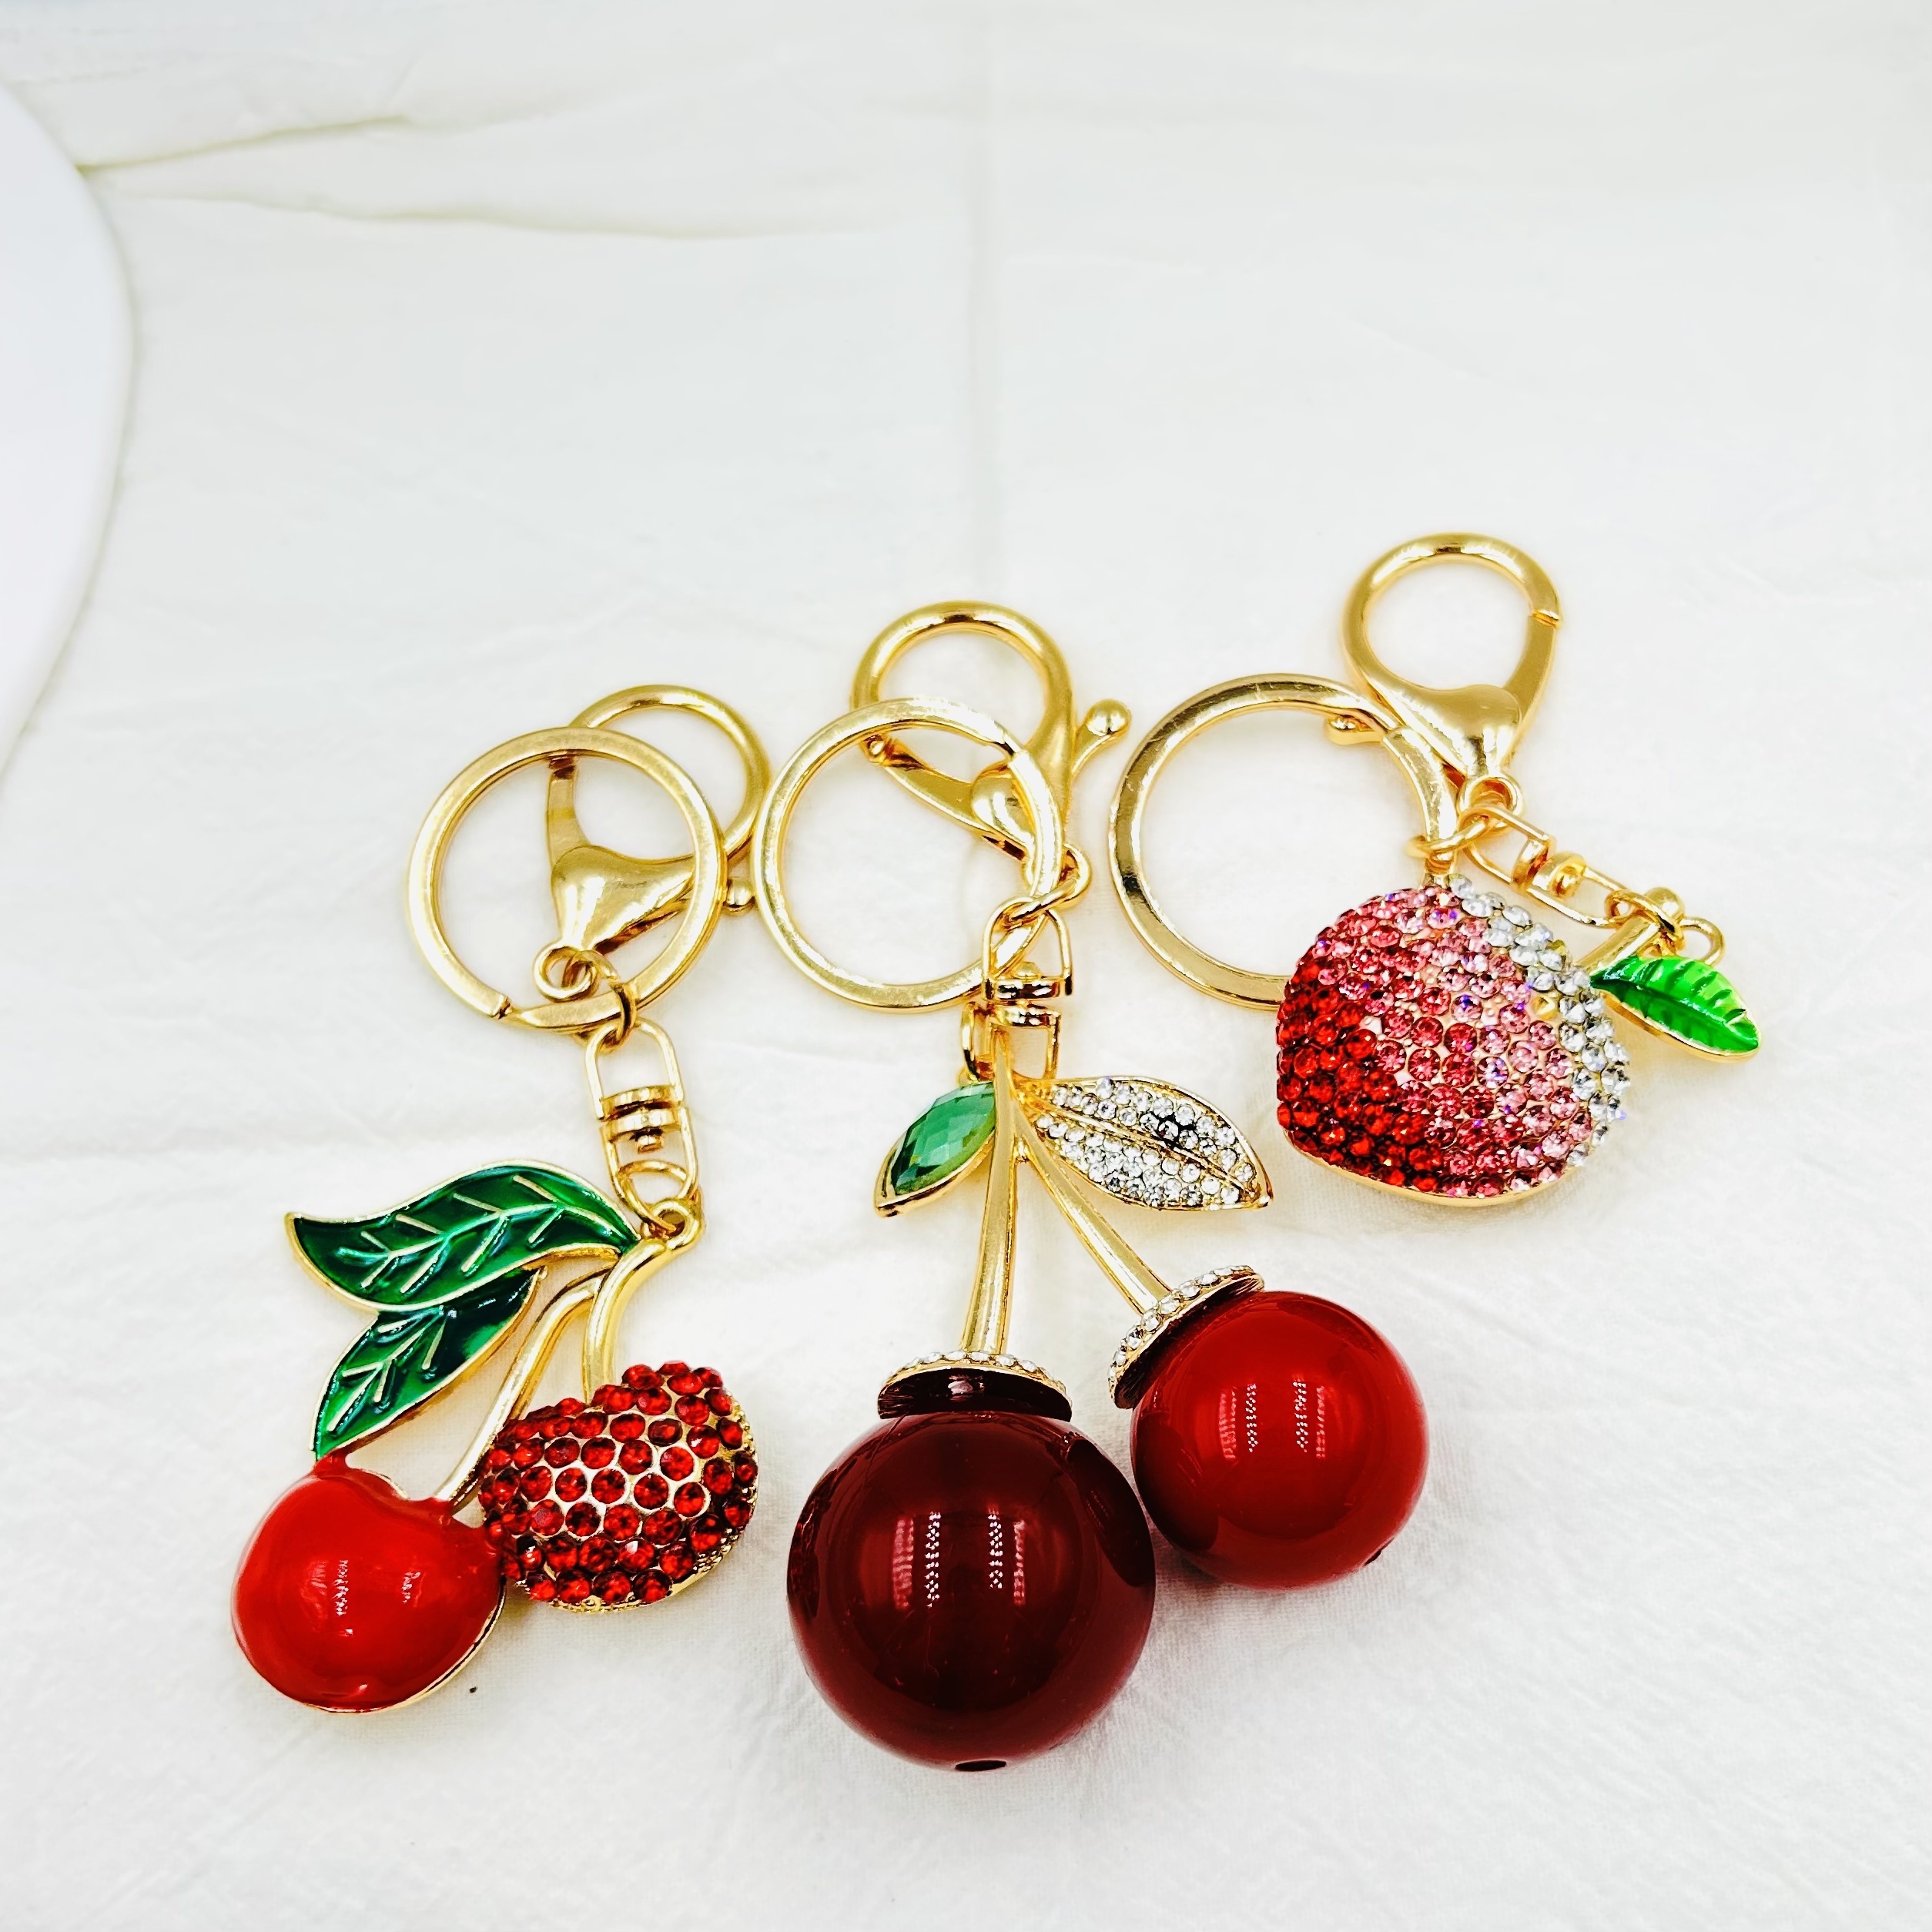 key tag Red Cherry Keychain Keyring Crystal Rhinestone Cute Fruit Female Bag